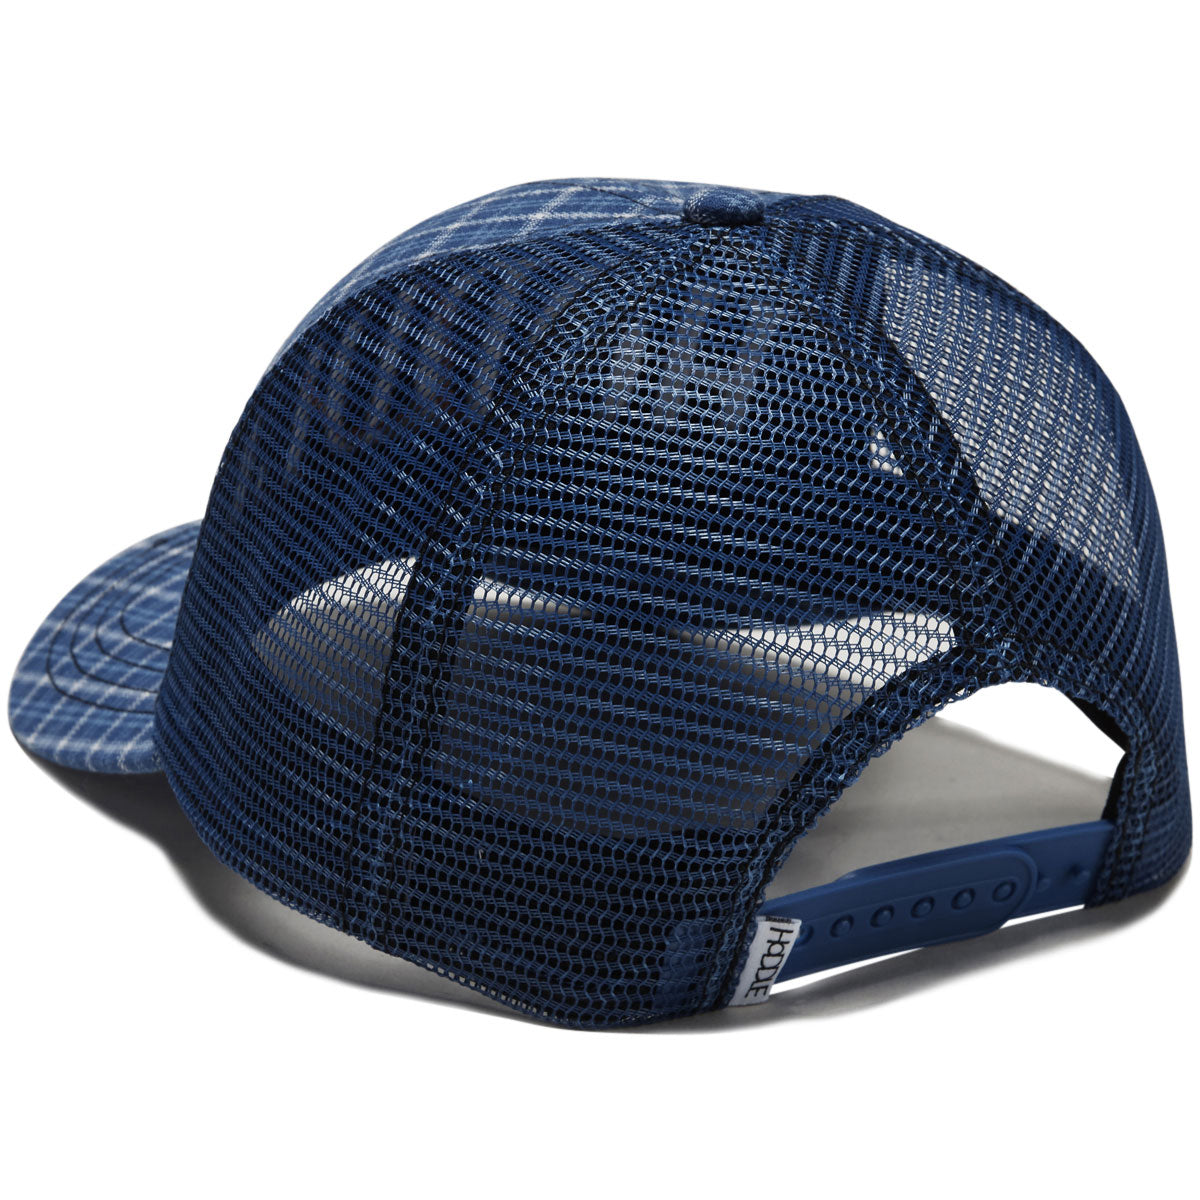 Hoddle Web Trucker Hat - Blue image 2